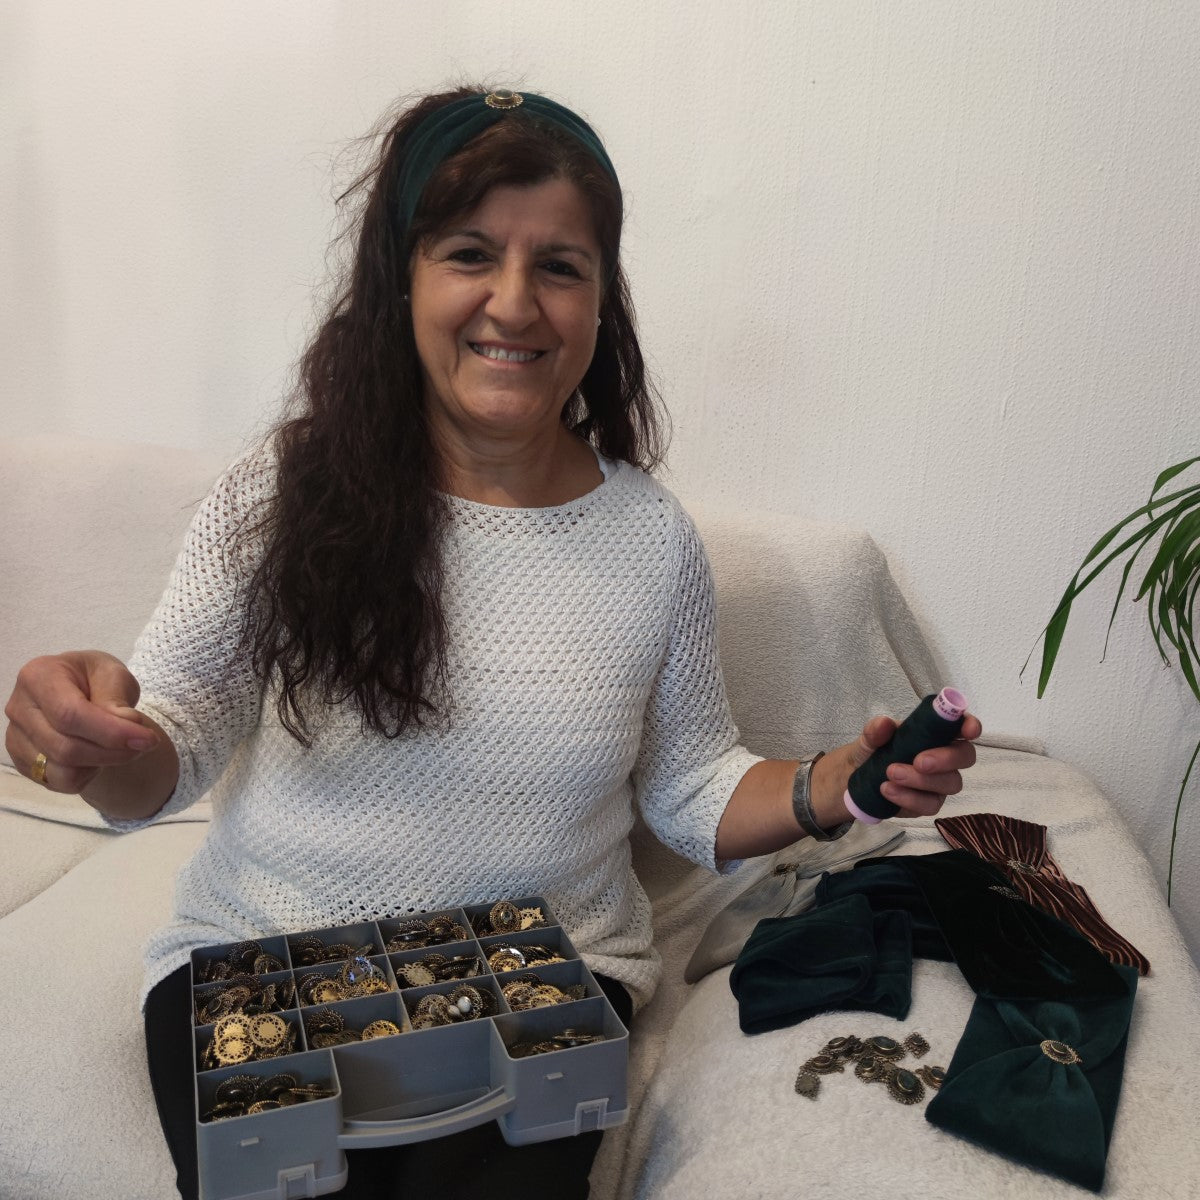 Fibi Haarband aus Samt in Tannengrün - mit Edelsteinen verziert